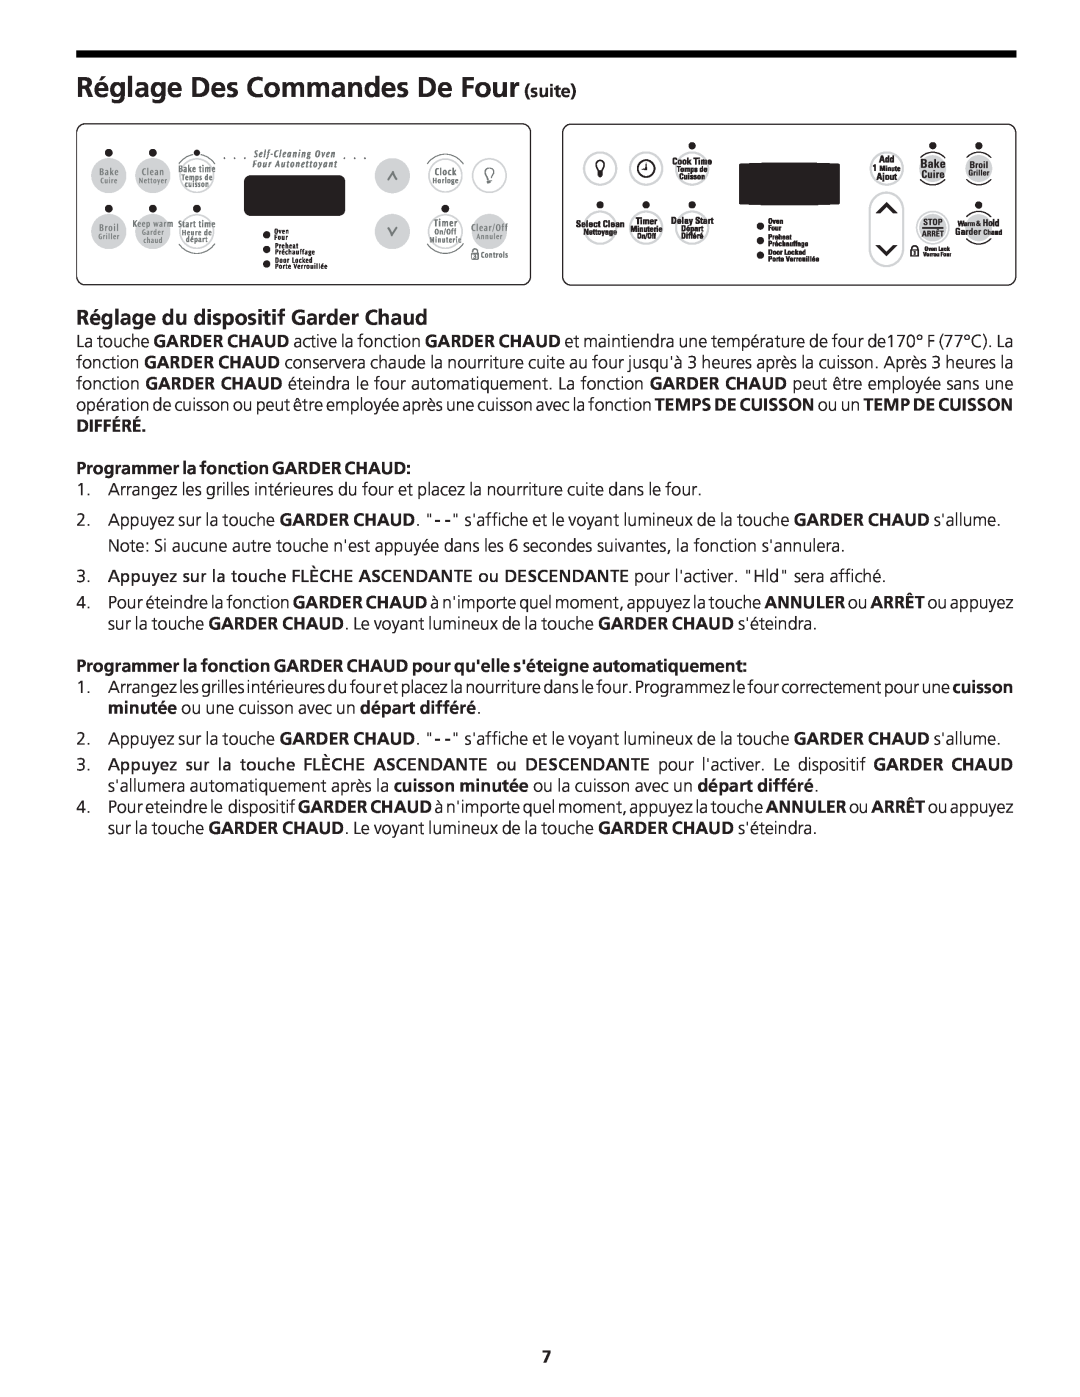 Frigidaire CFEB30S5GC manual Réglage du dispositif Garder Chaud, Réglage Des Commandes De Four suite 